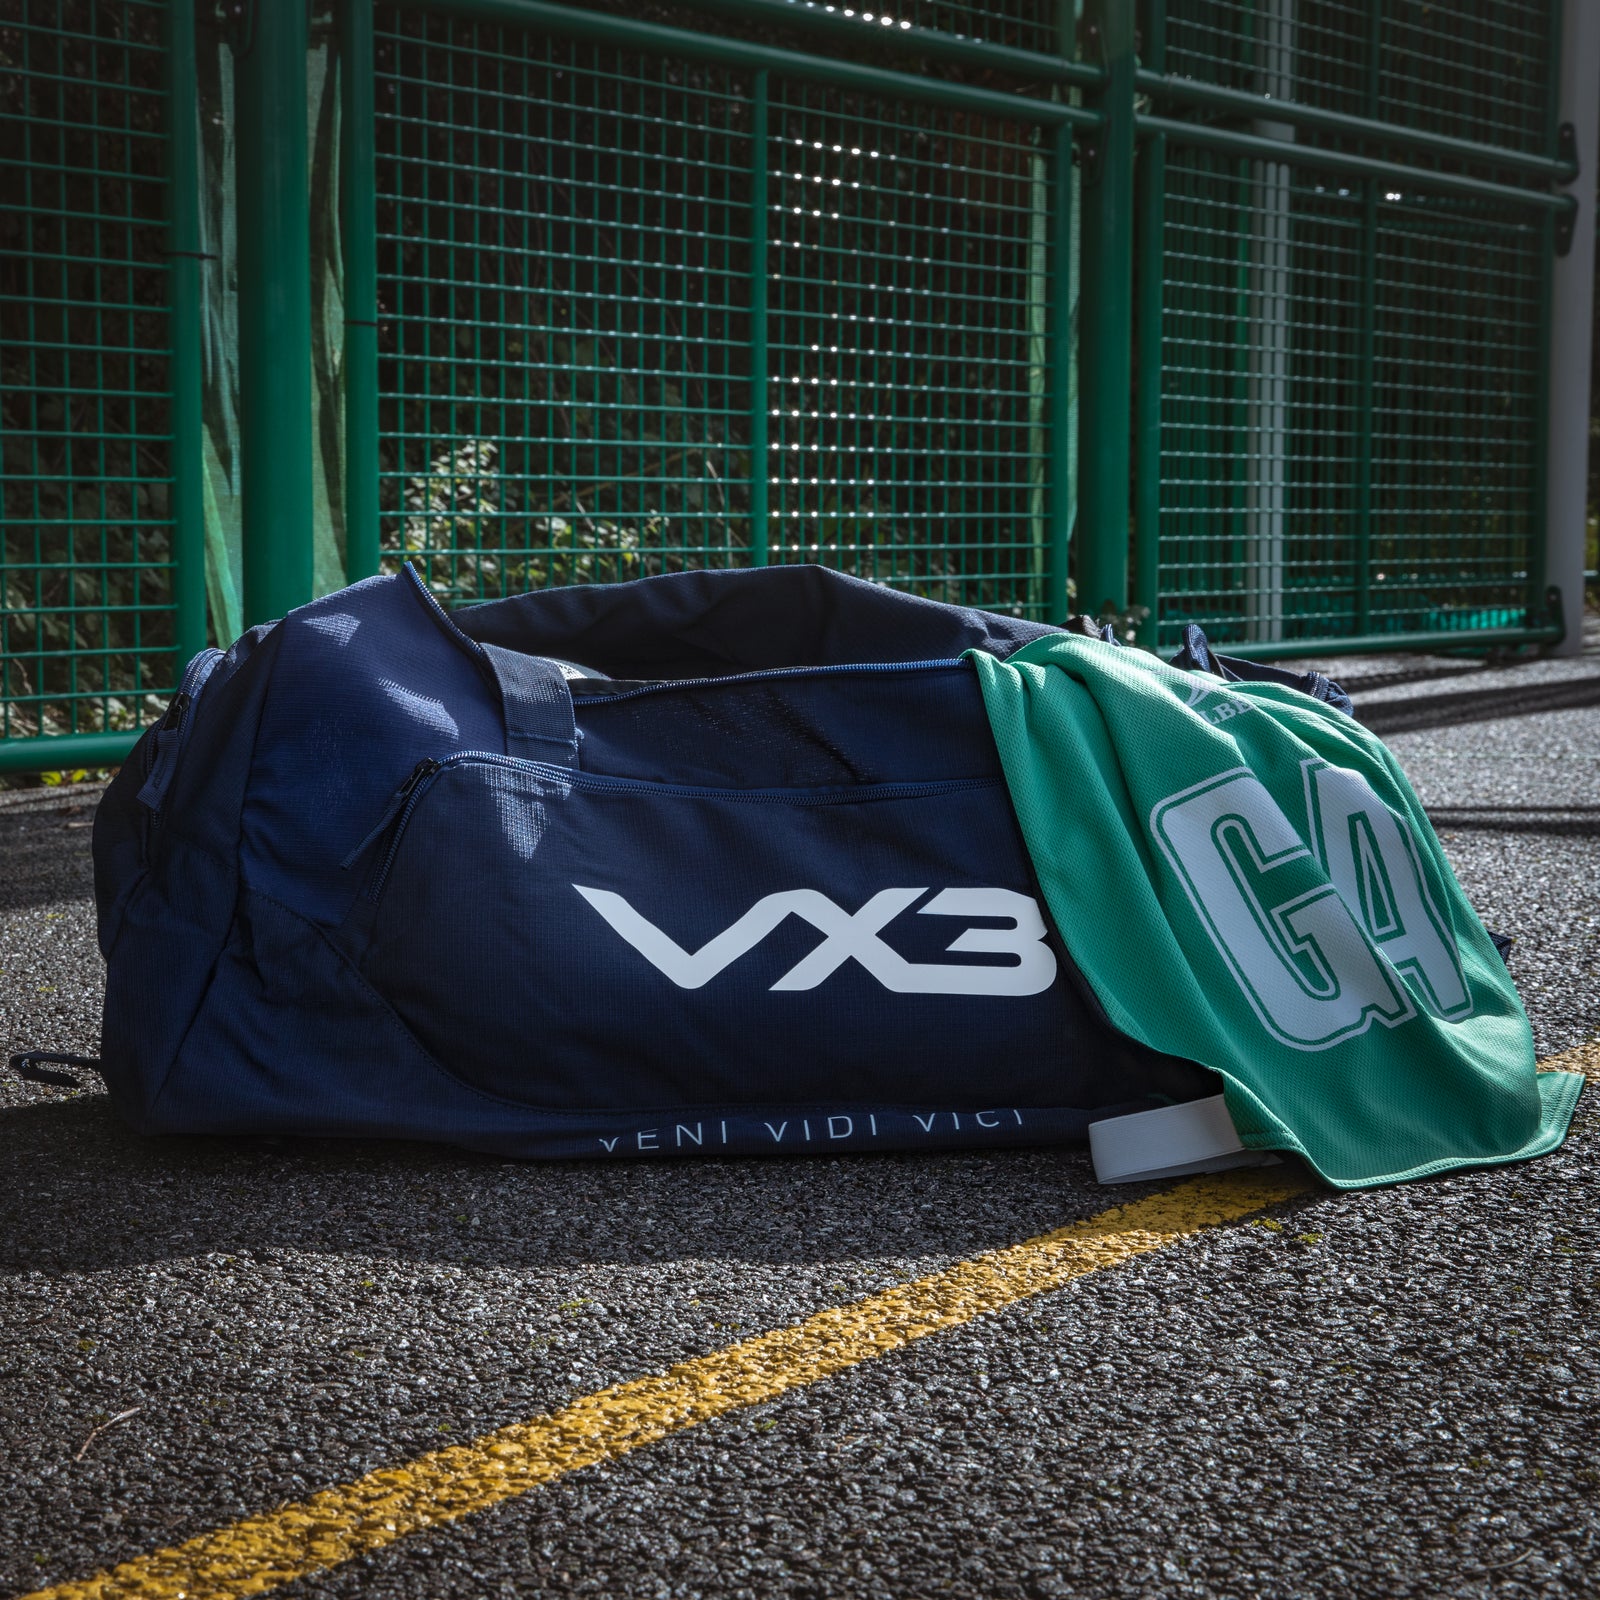 VX3 Teamwear Rugby Bags - Rugbystuff